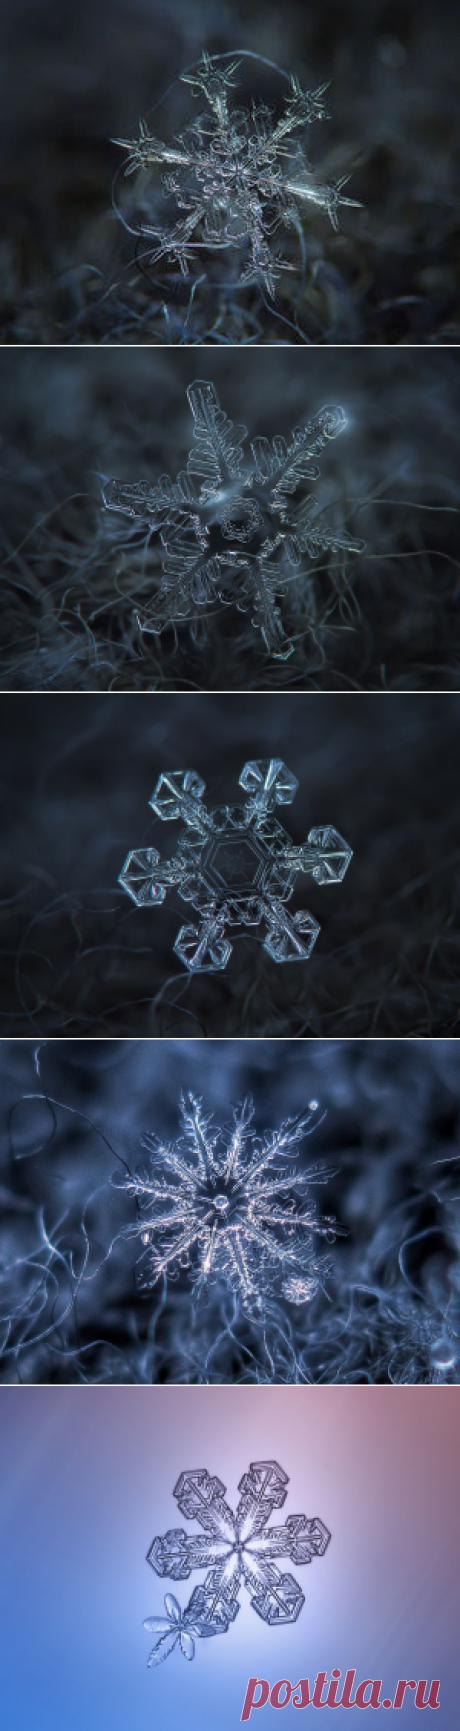 Тайная жизнь снежинки: удивительные макроснимки - Ярмарка Мастеров - ручная работа, handmade